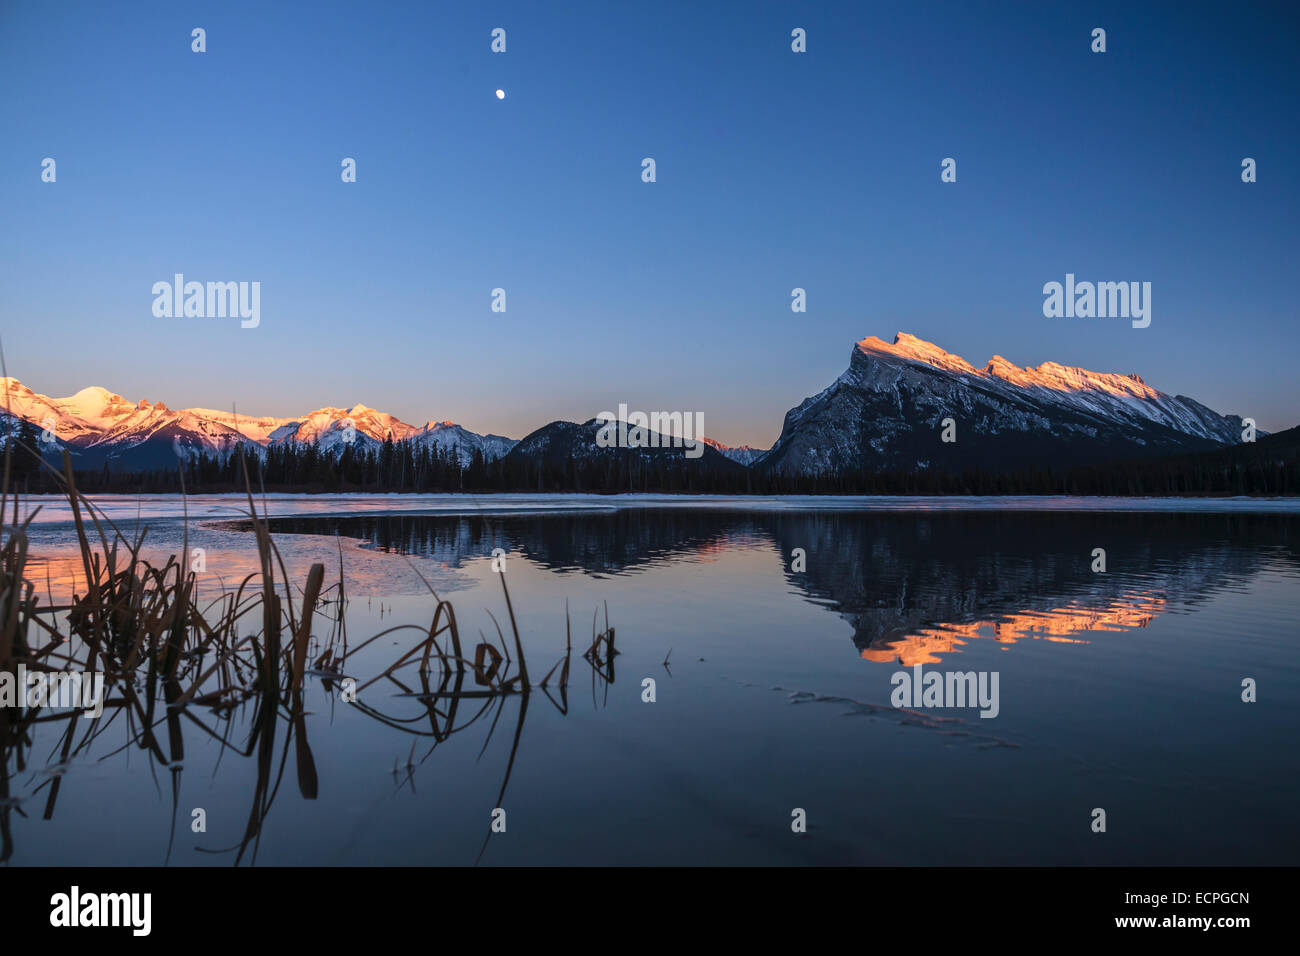 Le mont Rundle est reflétée dans les eaux calmes des lacs Vermillion hiver dans le parc national Banff. Les chinooks janvier ouvert de sect Banque D'Images